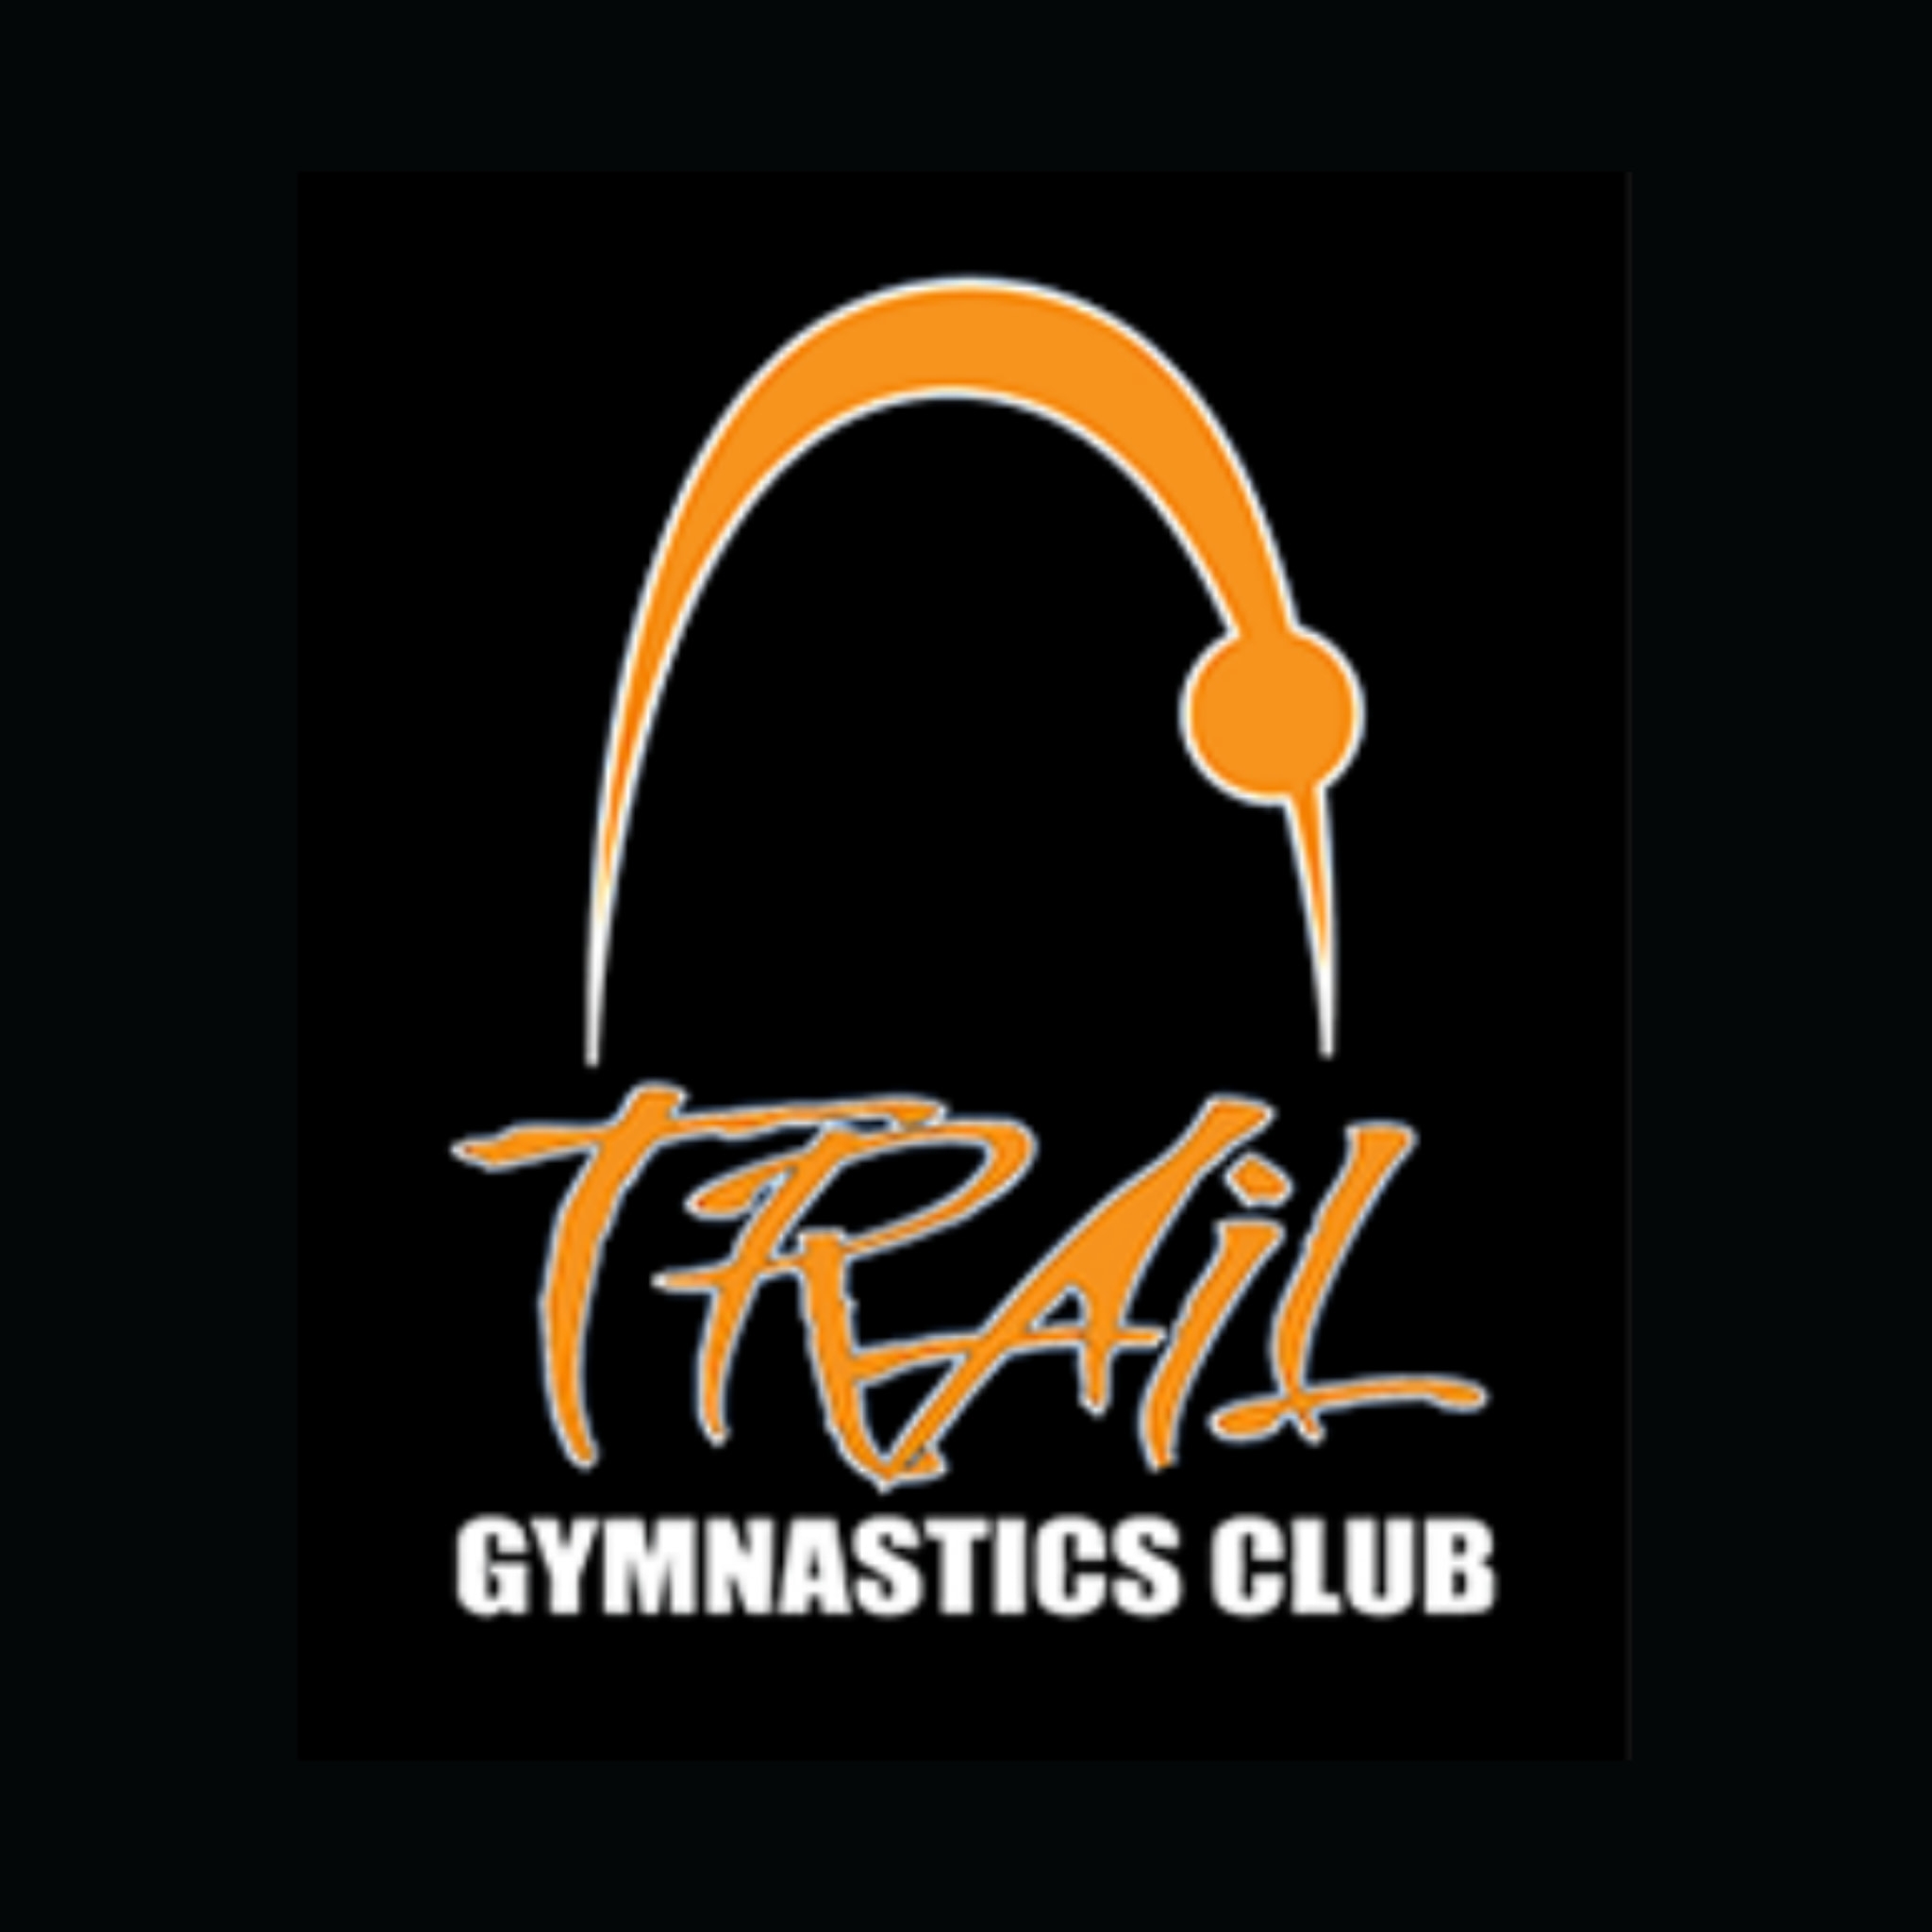 Trail Gymnastics Club | Organizational Profile, Work & Jobs